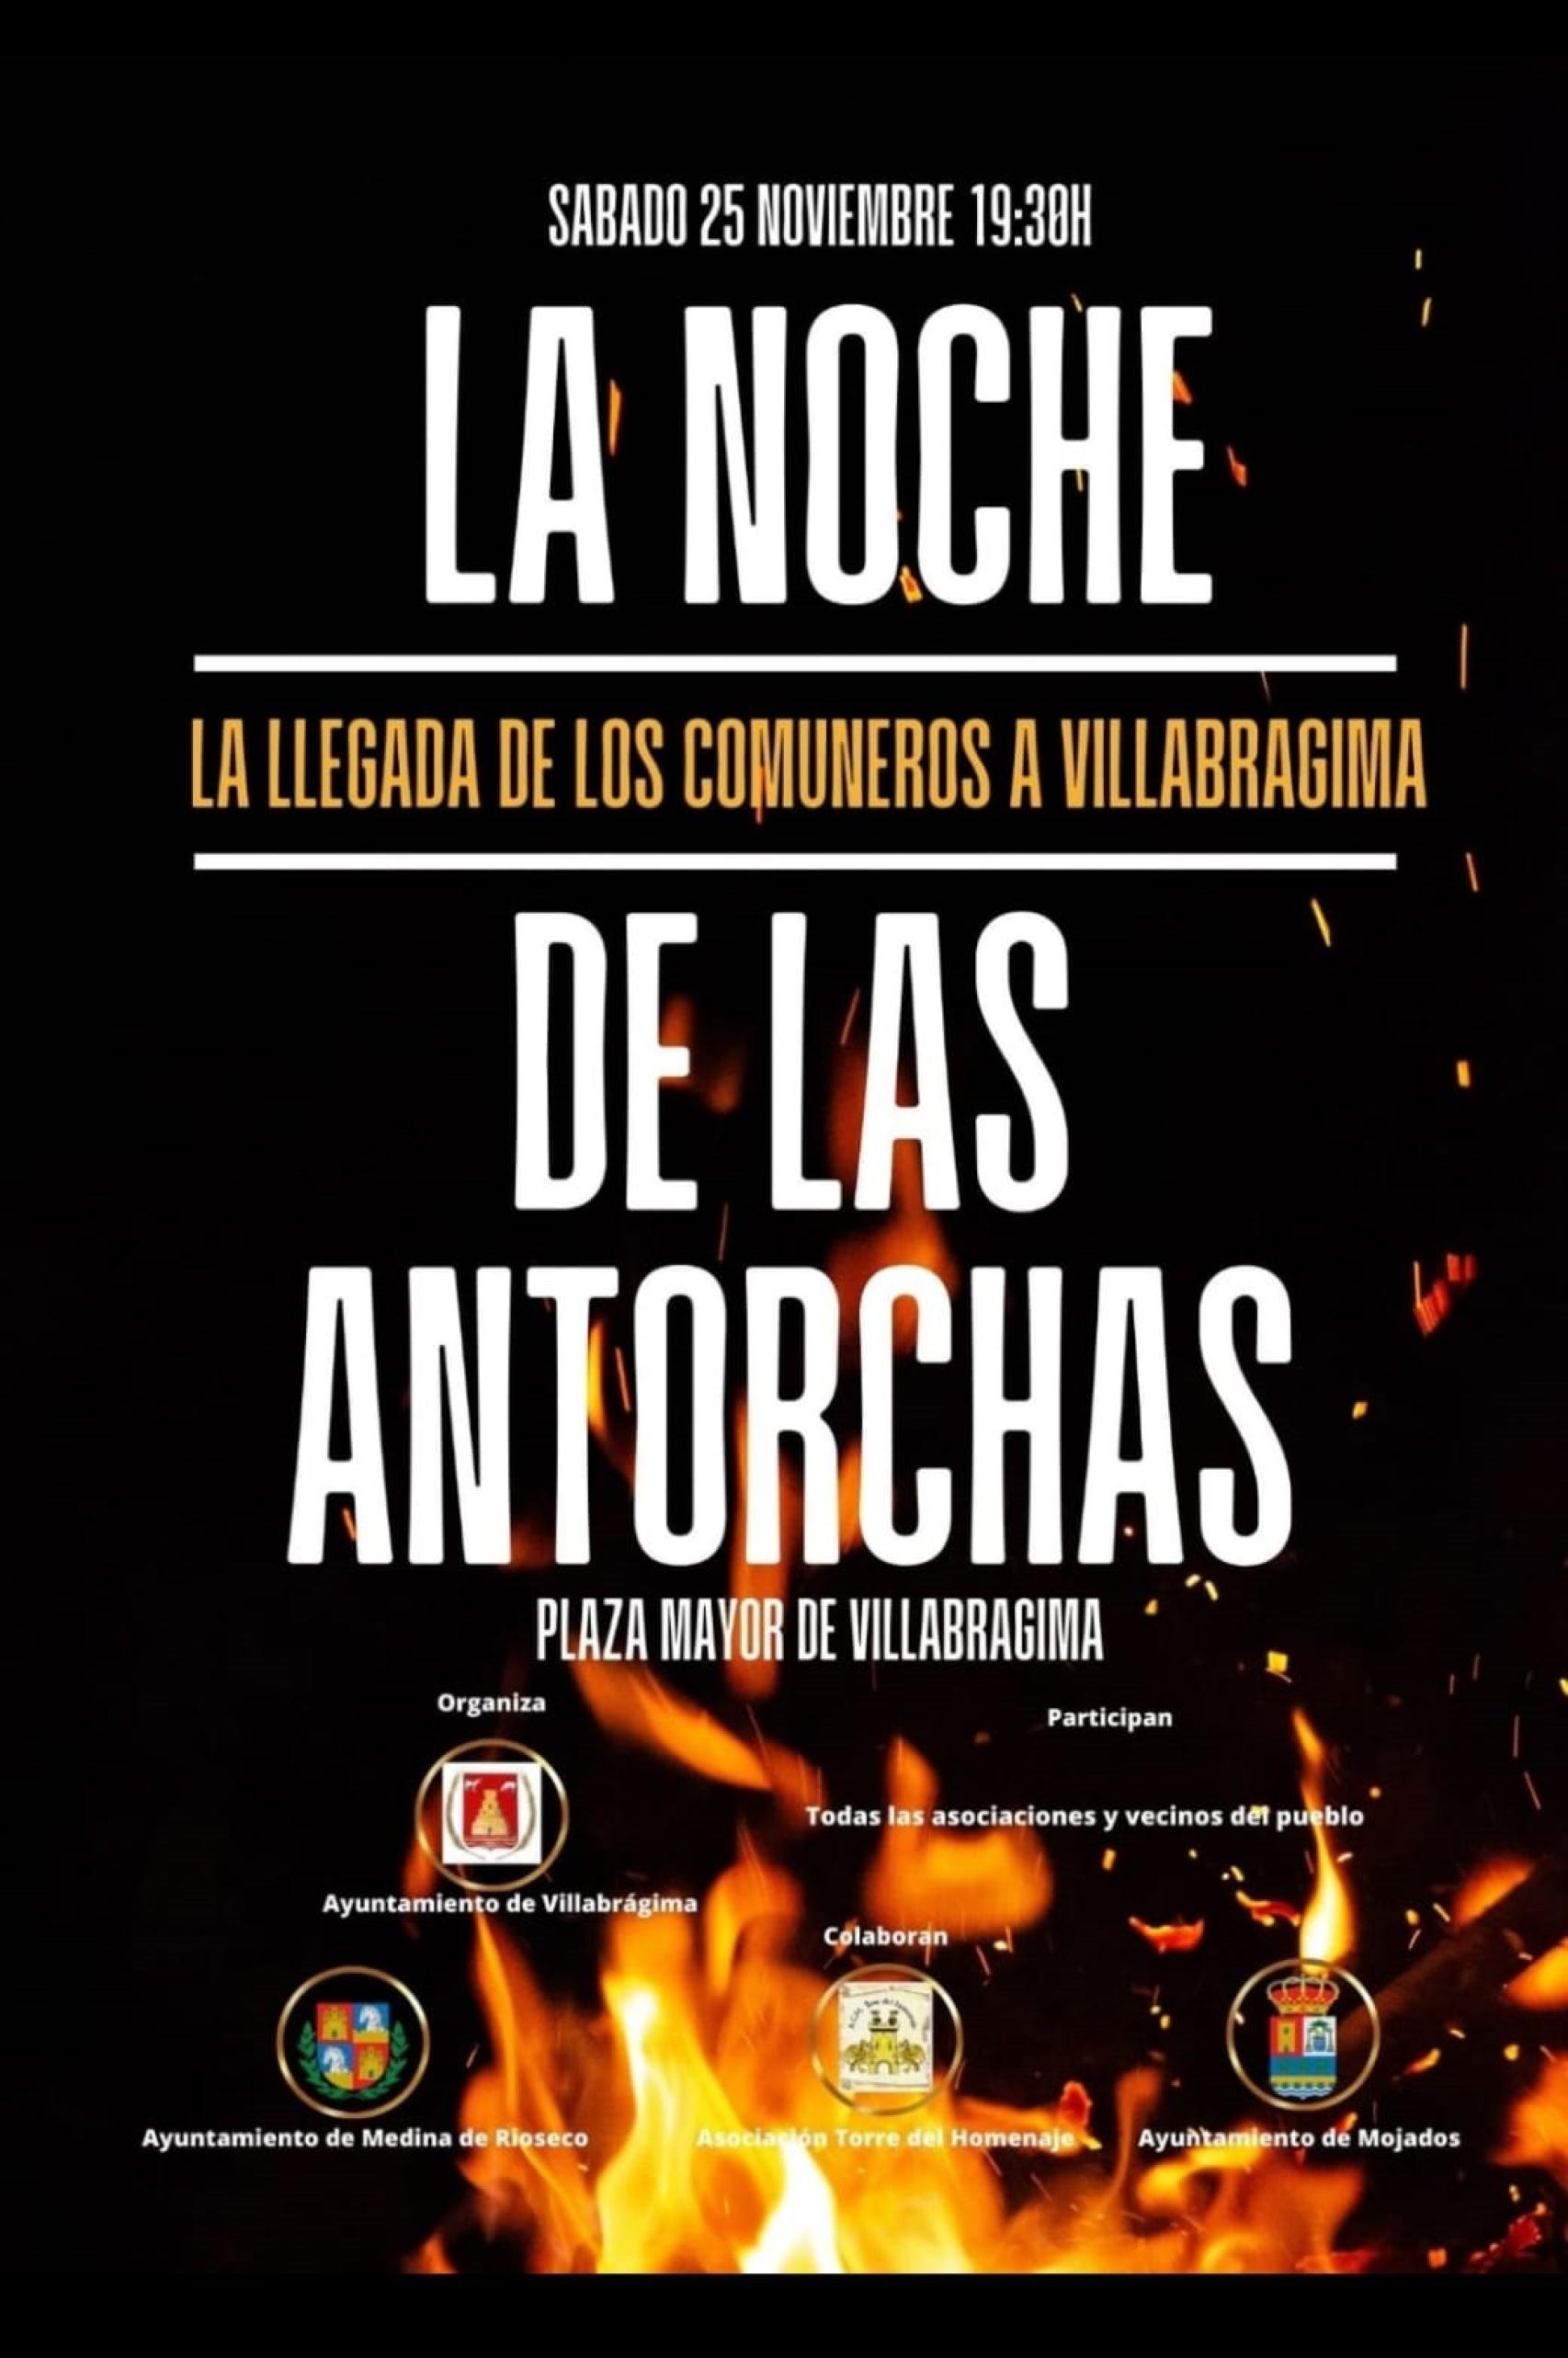 Cartel de 'La noche de las antorchas' de Villabrágima